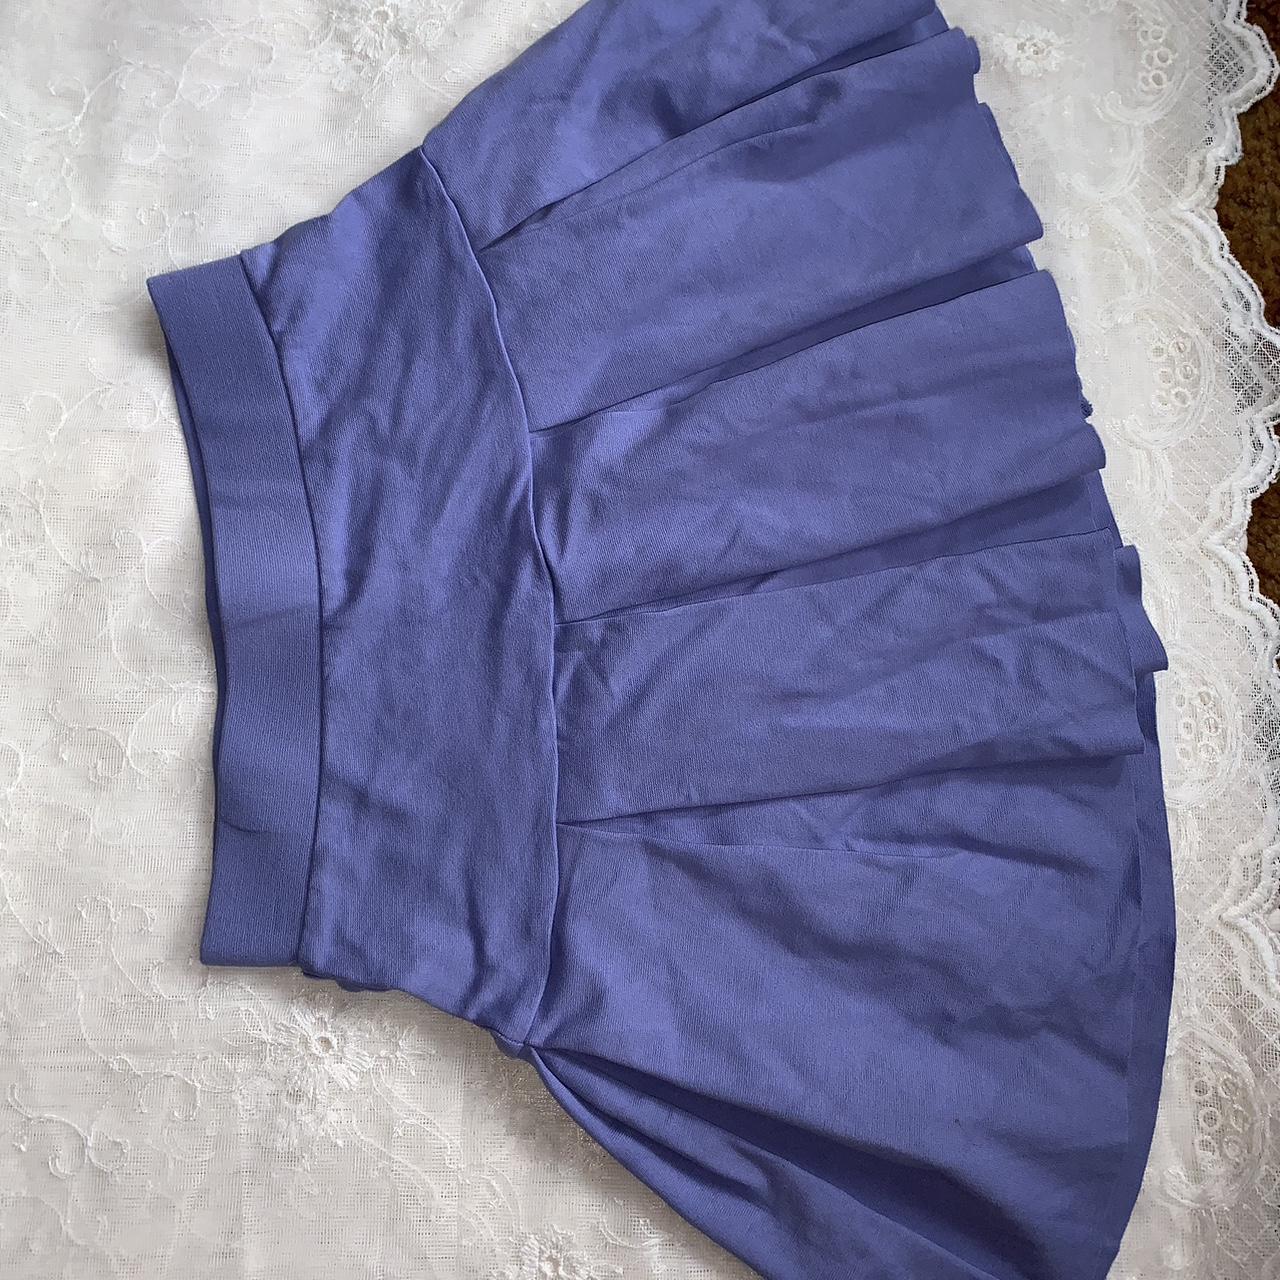 Super cute unworn stretchy violet tennis skirt - Depop